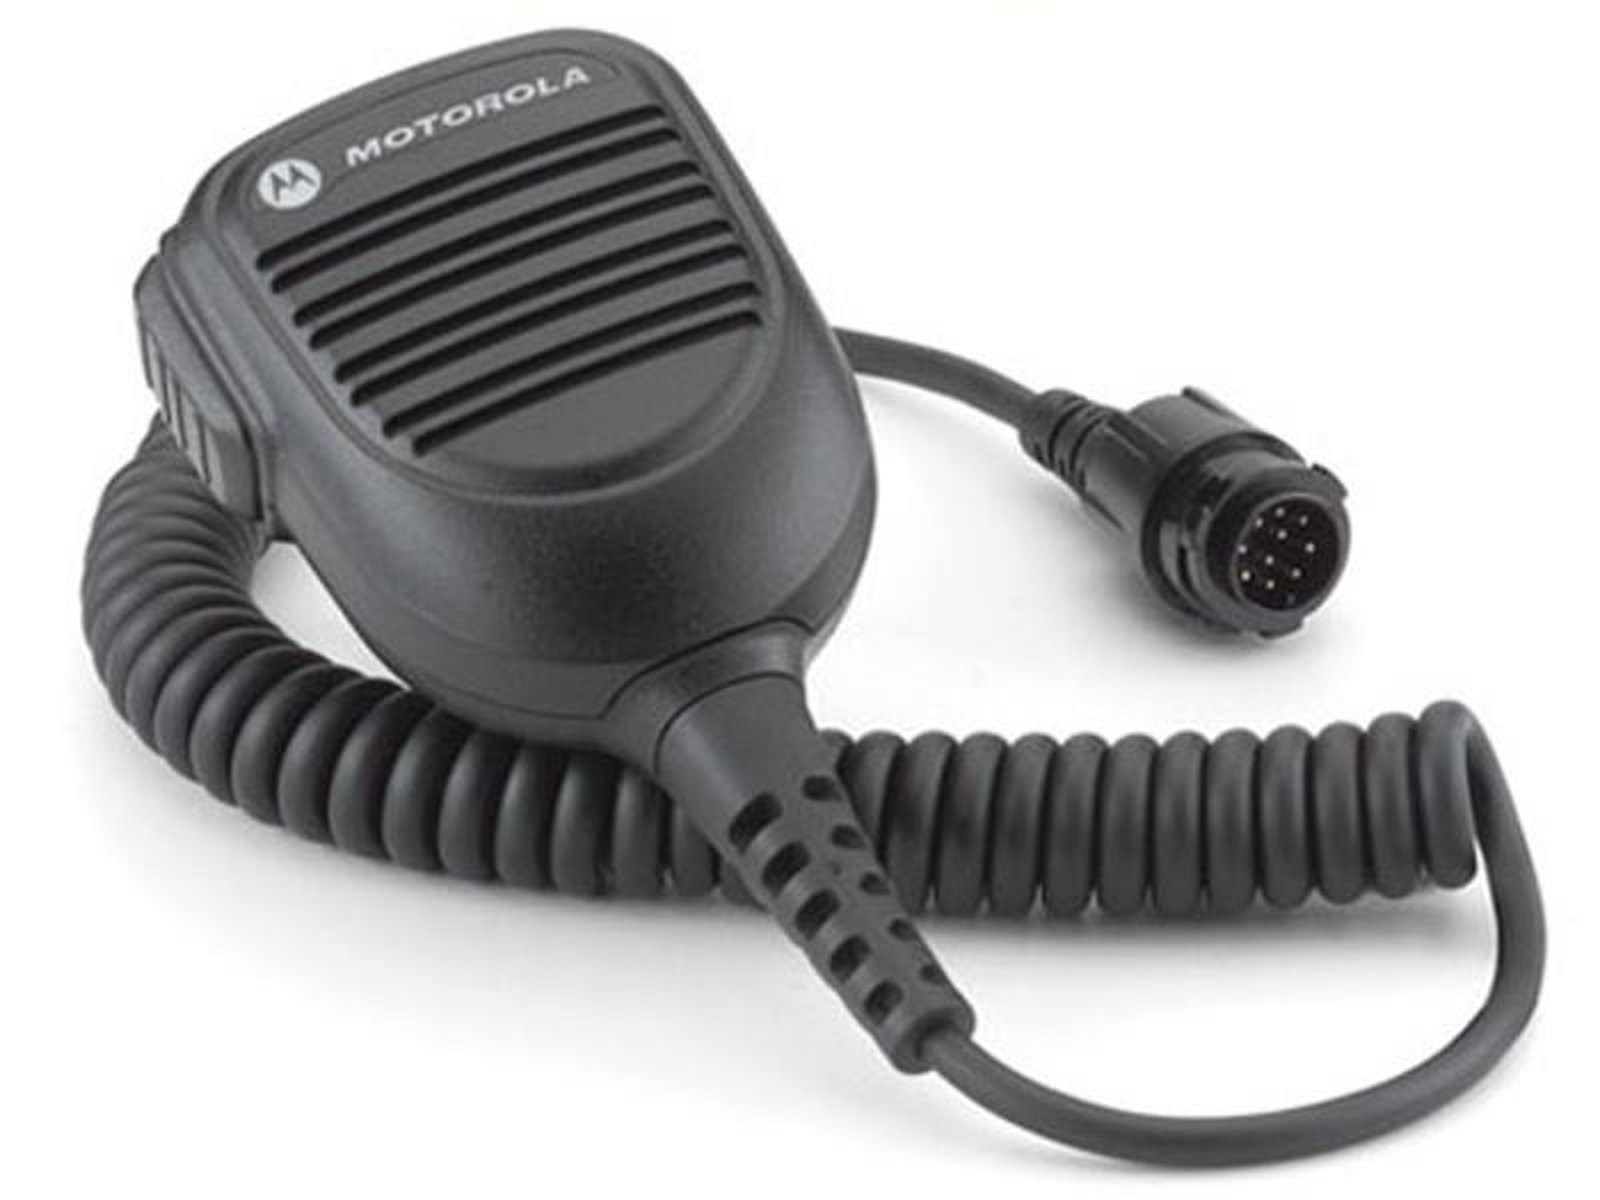 Motorola PMMN4070A Lautsprechermikrofon